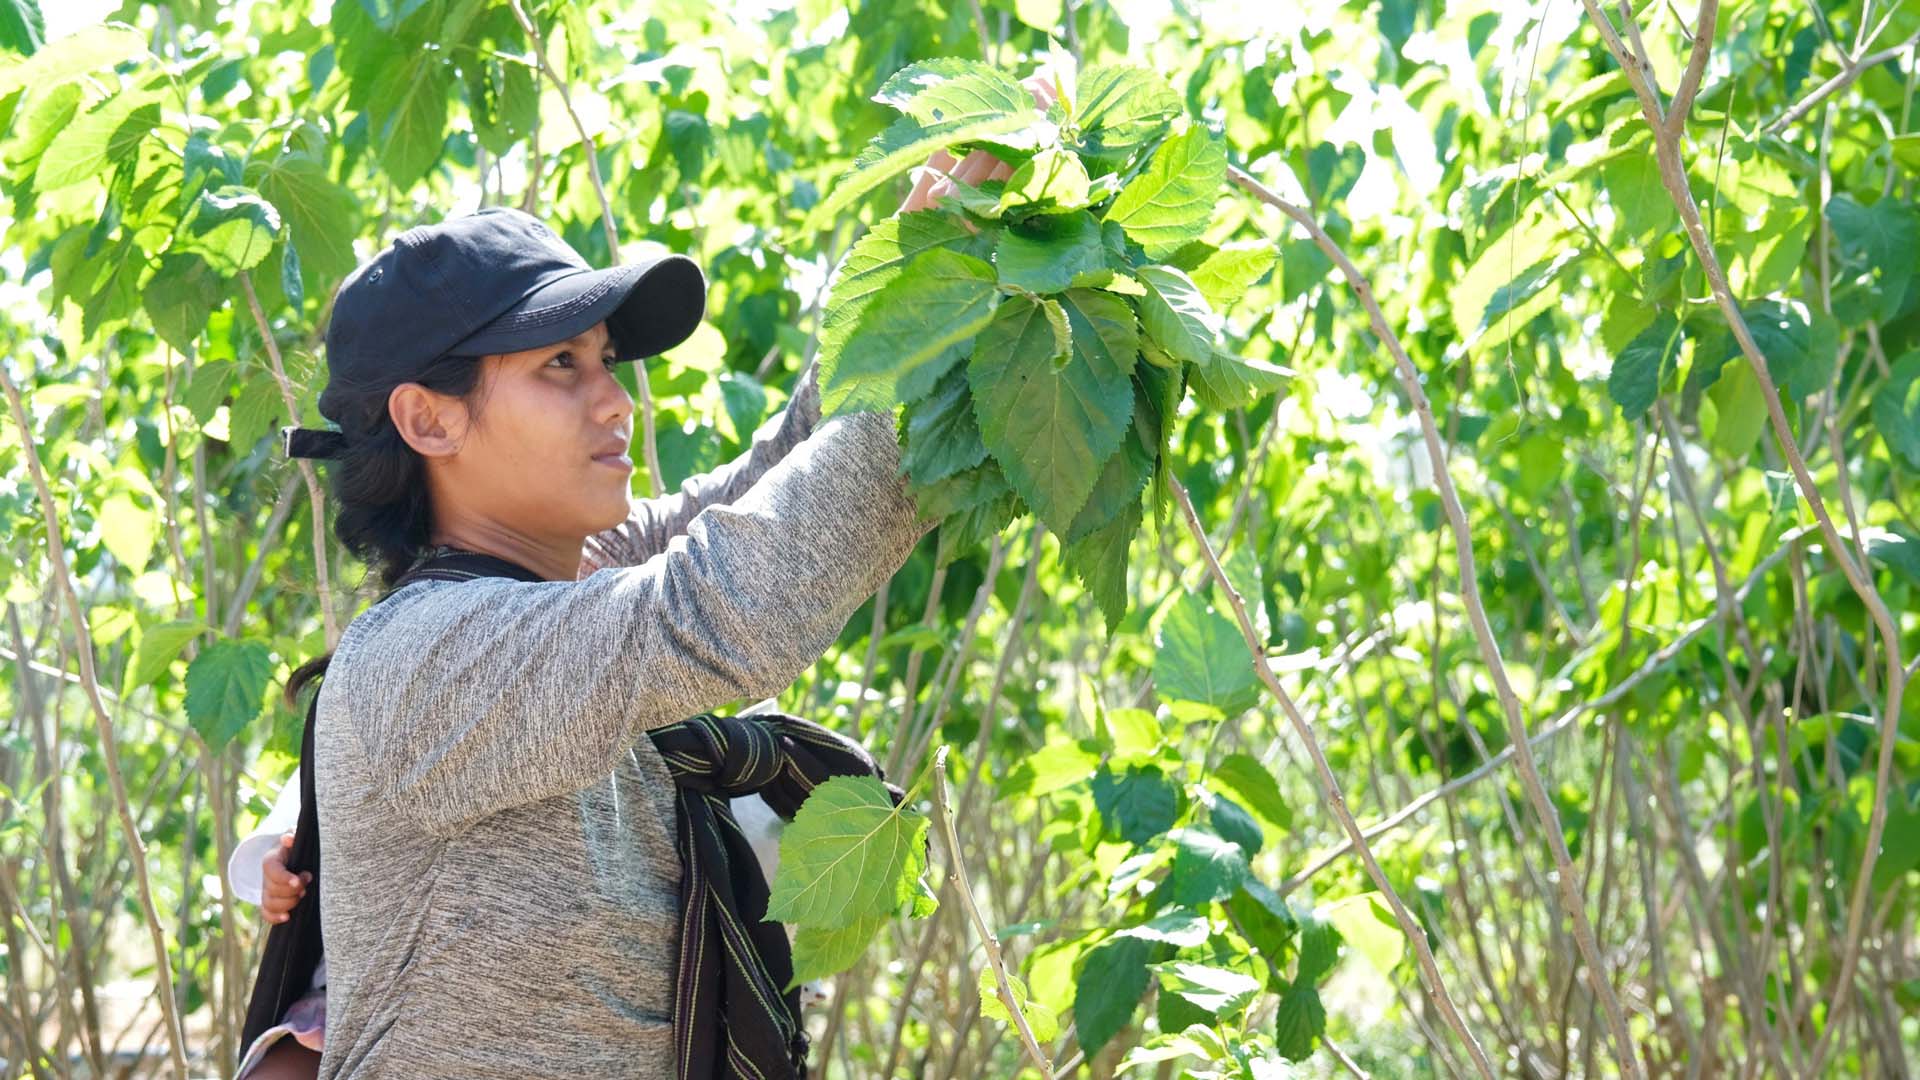 Lâm Đồng: Vùng quê hiền hòa với mức thu nhập ổn định nhờ nghề trồng dâu